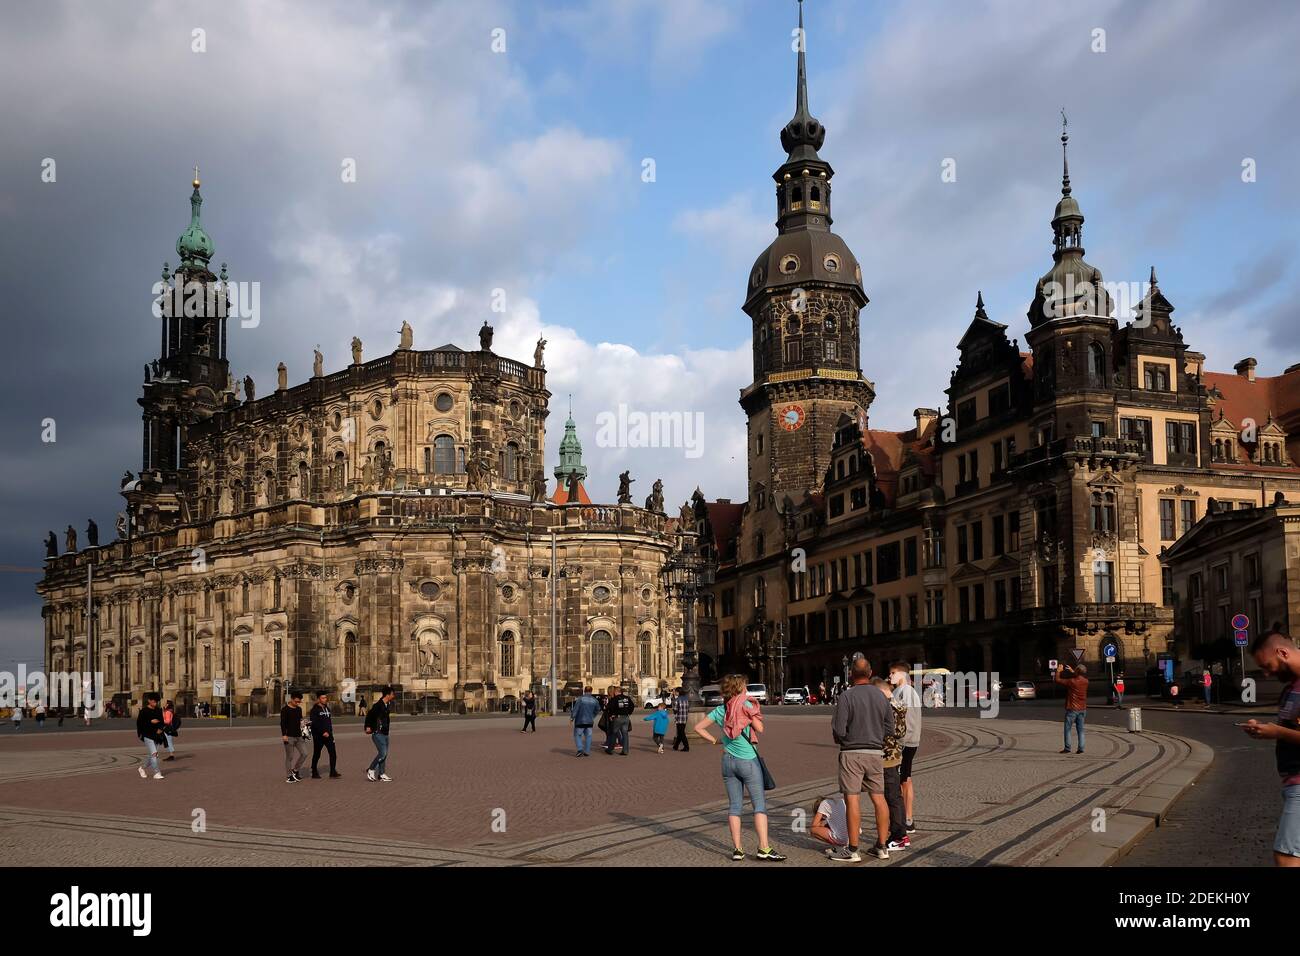 Historisches Zentrum in der Dresdner Altstadt mit Turm Genannt Hausmannsturm Stock Foto Stockfoto